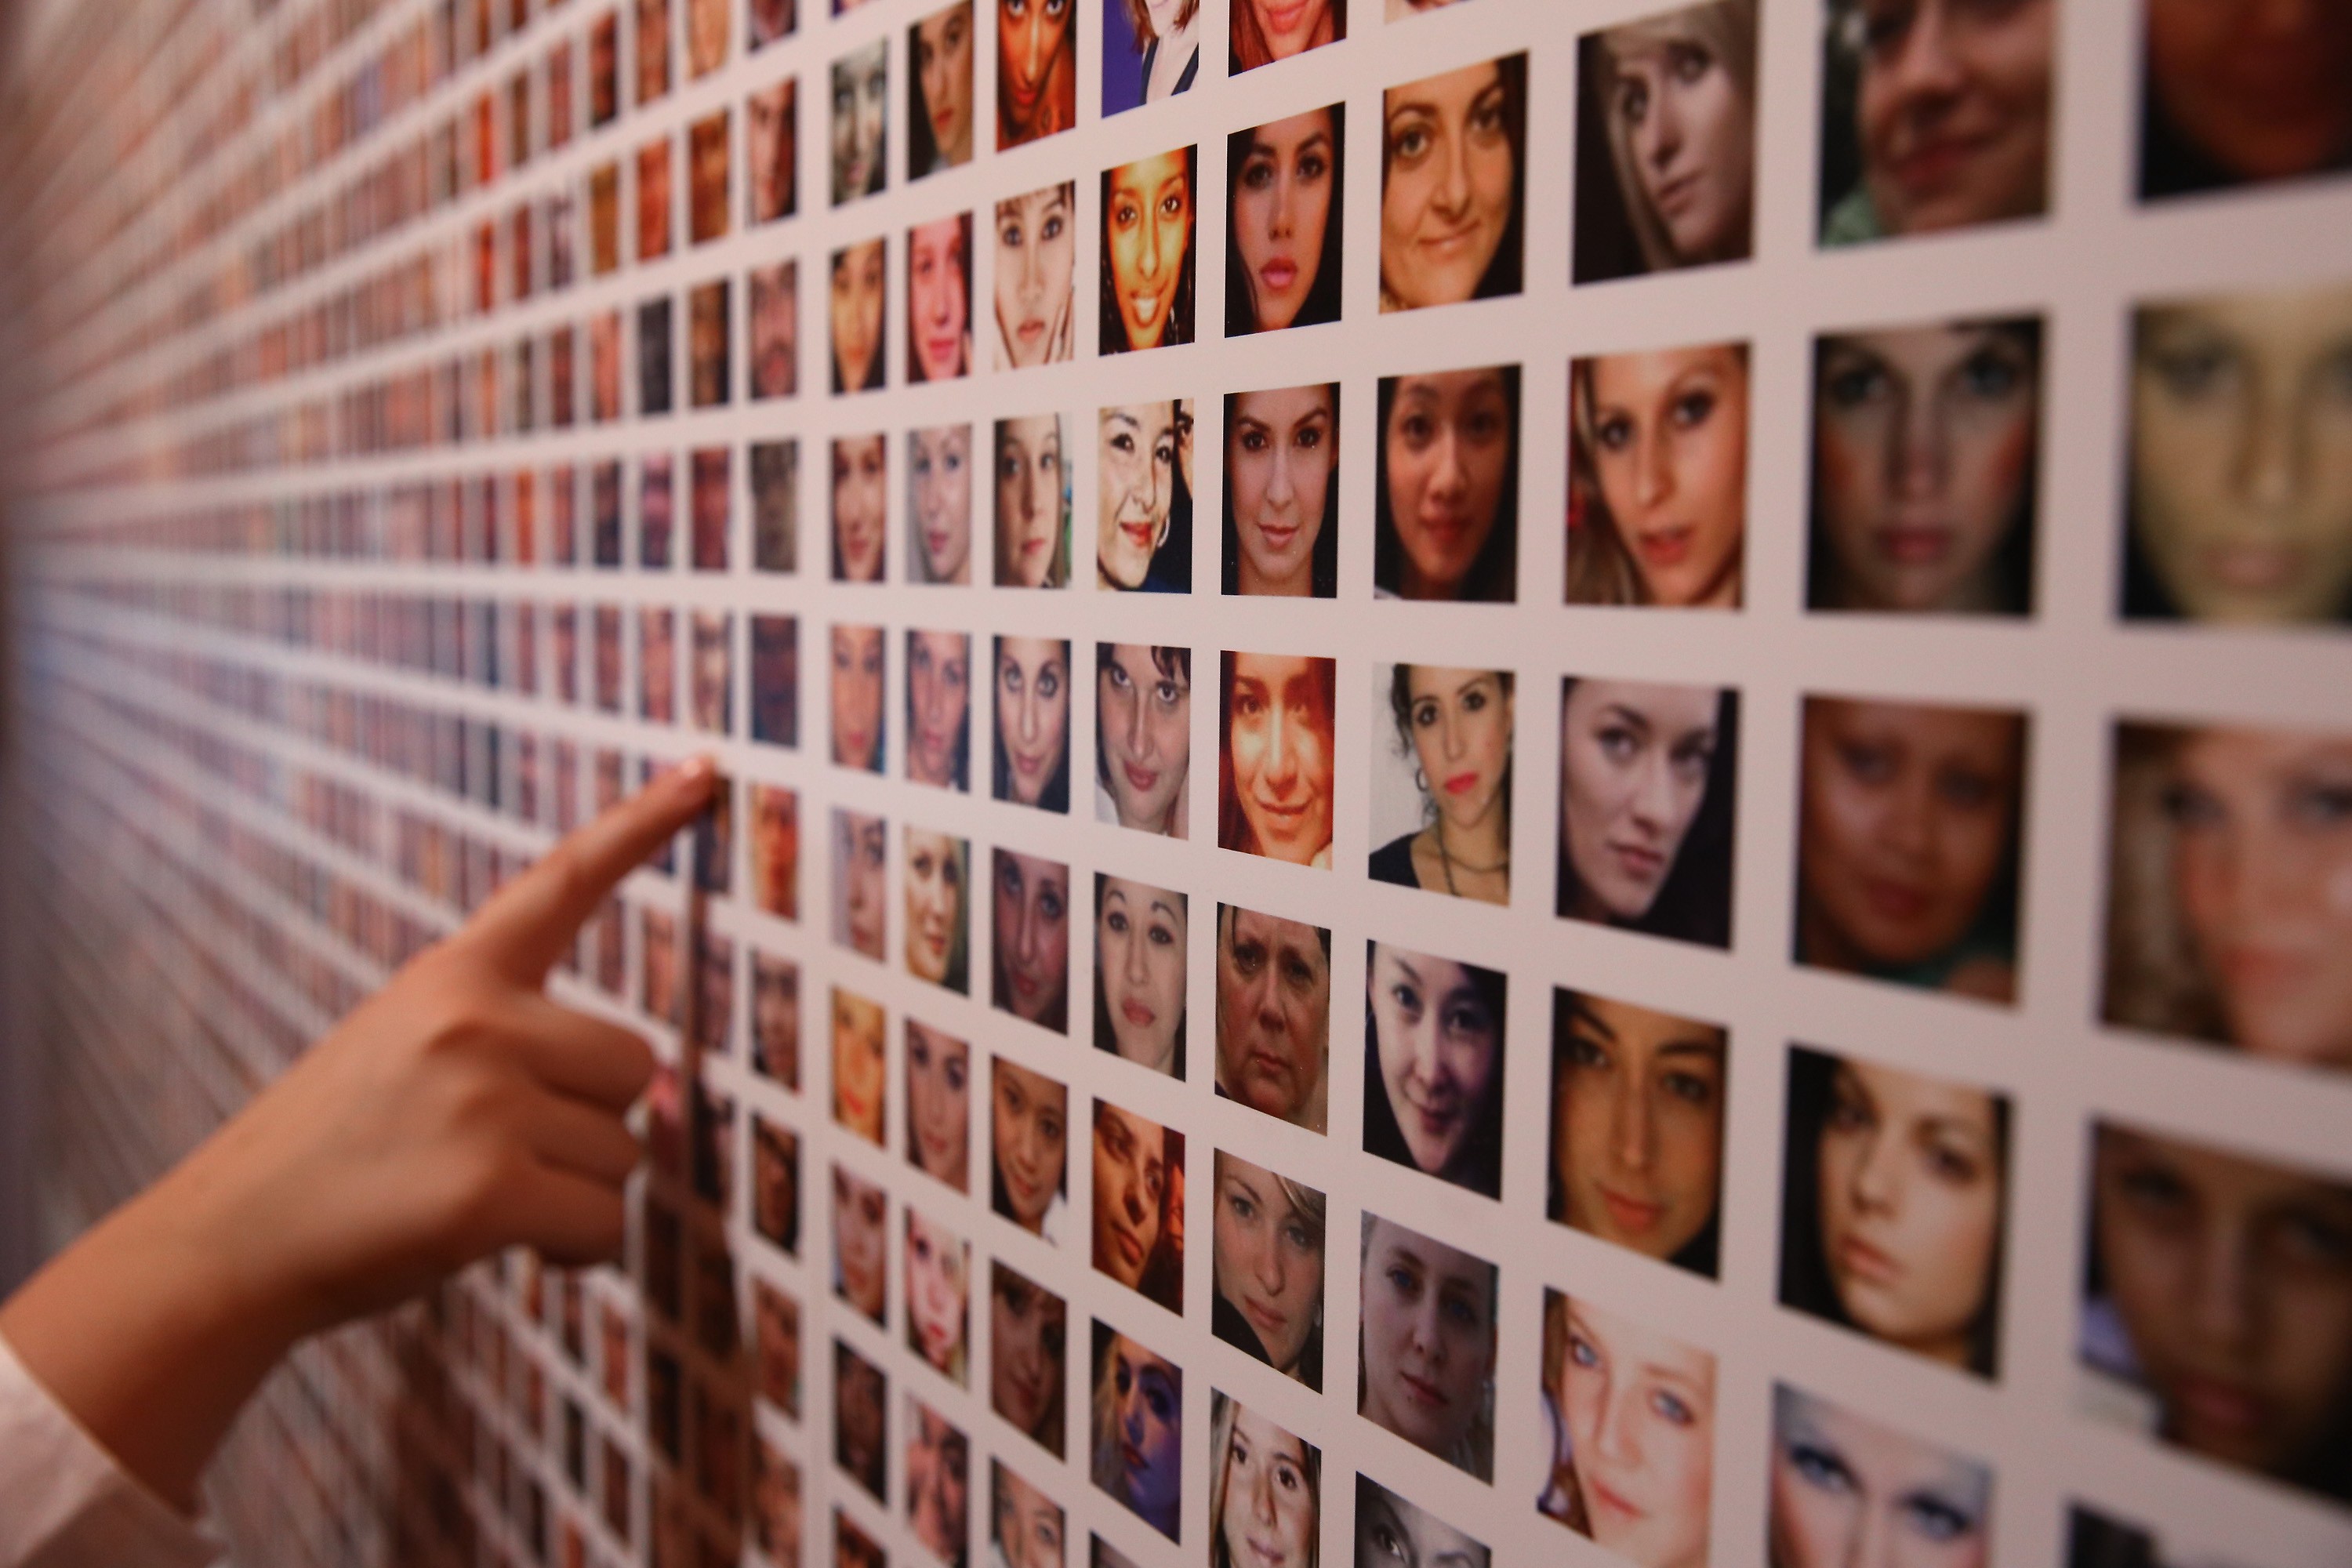 O novo sistema de reconhecimento facial do Facebook avisa os usuários quando alguém publica uma foto com eles - mesmo que não estejam marcados (Foto: Getty Images/Peter Macdiarmid)